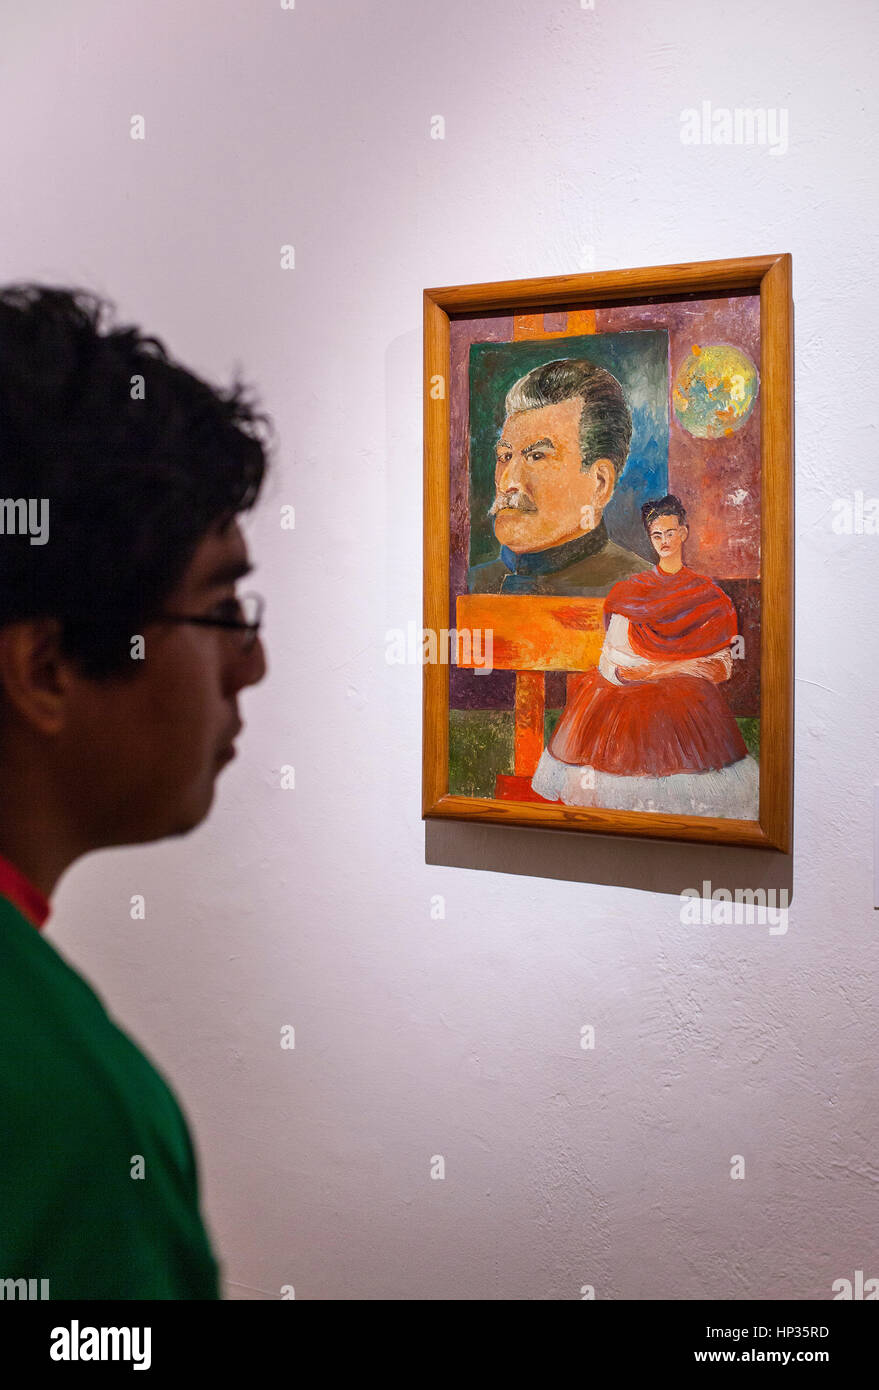 Frida Kahlo museum, Stalin e Frida da Frida Kahlo, Coyoacan, Città del Messico, Messico Foto Stock